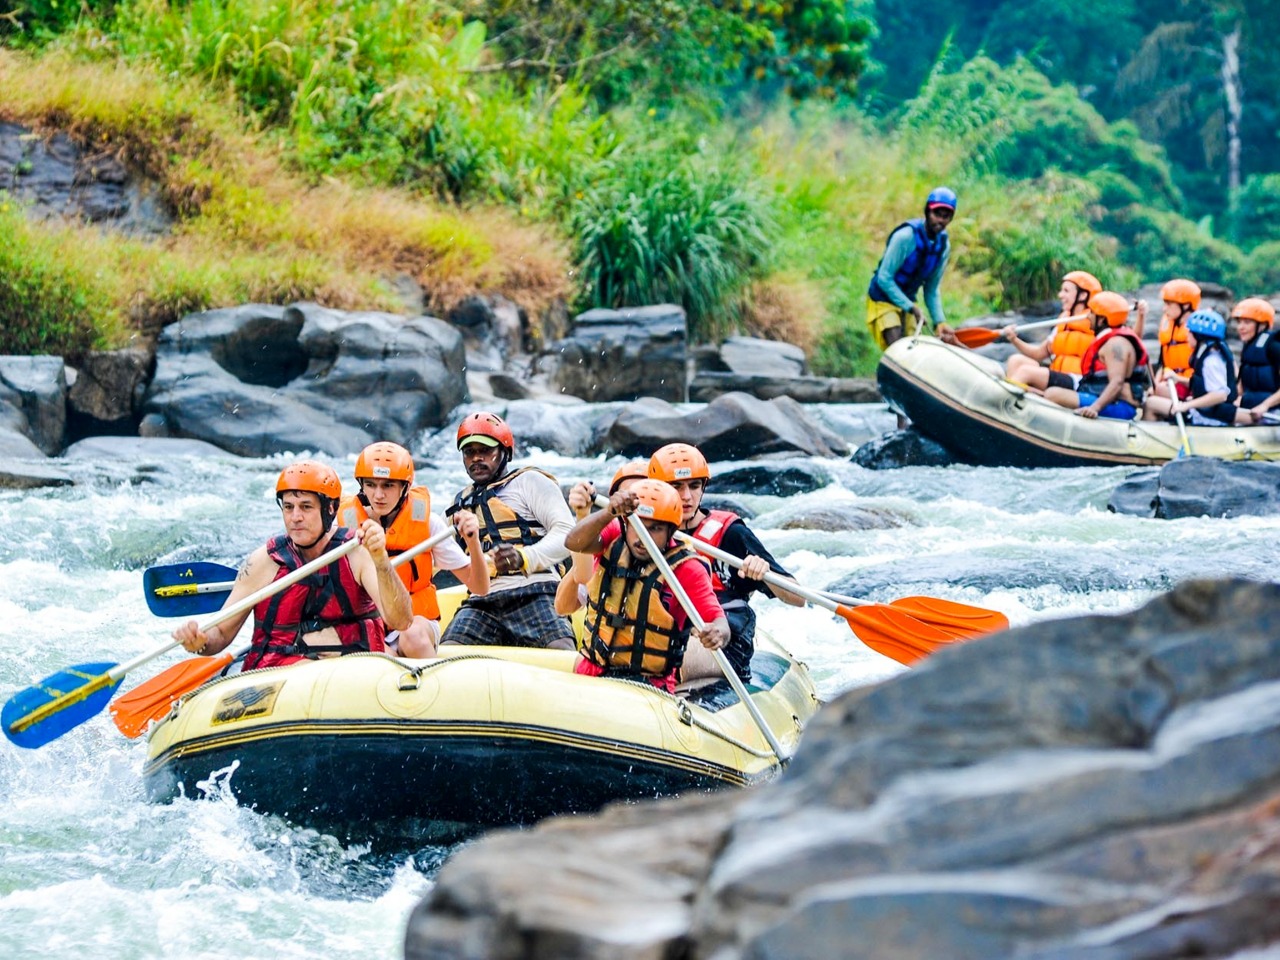 Рафтинг по реке Келания Ганга | Цена 350€, отзывы, описание экскурсии